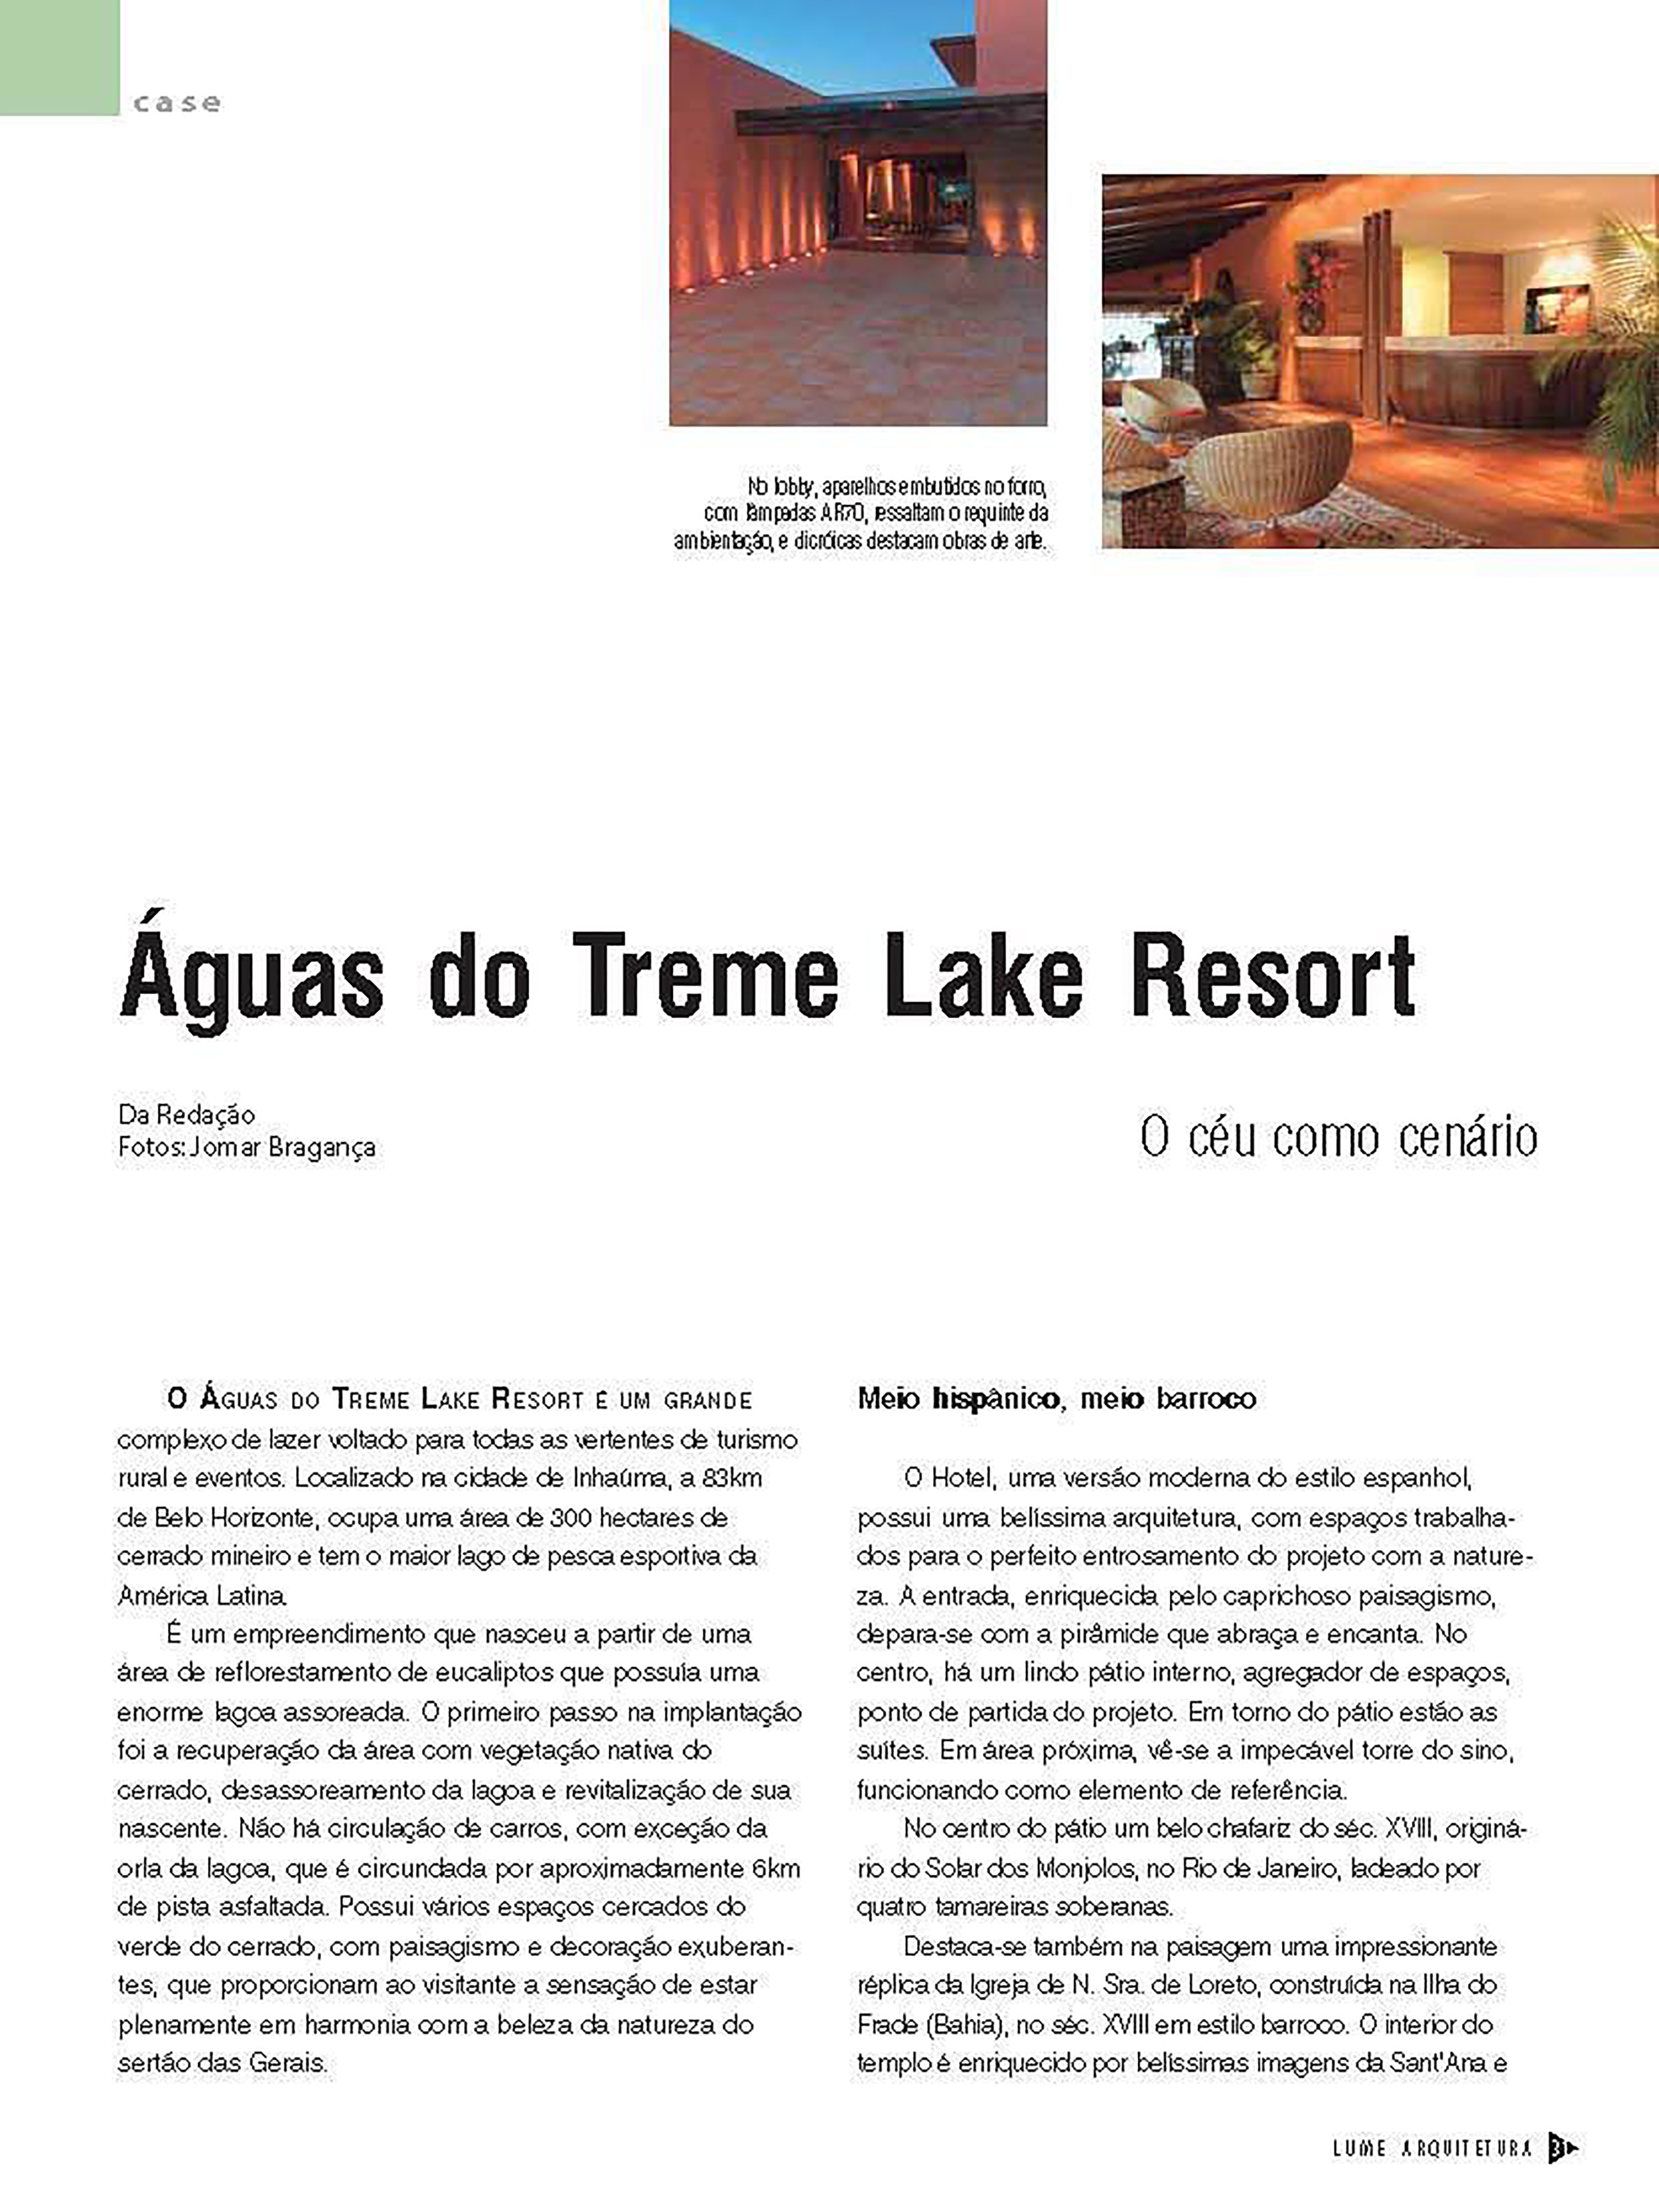  O Águas do Treme Lake Resort, um grandioso complexo de lazer situado na cidade de Inhaúma, a 83 km de Belo Horizonte, destaca-se como um ícone do turismo rural e de eventos. Com uma vasta extensão de 300 hectares no cerrado mineiro, o resort é notáv